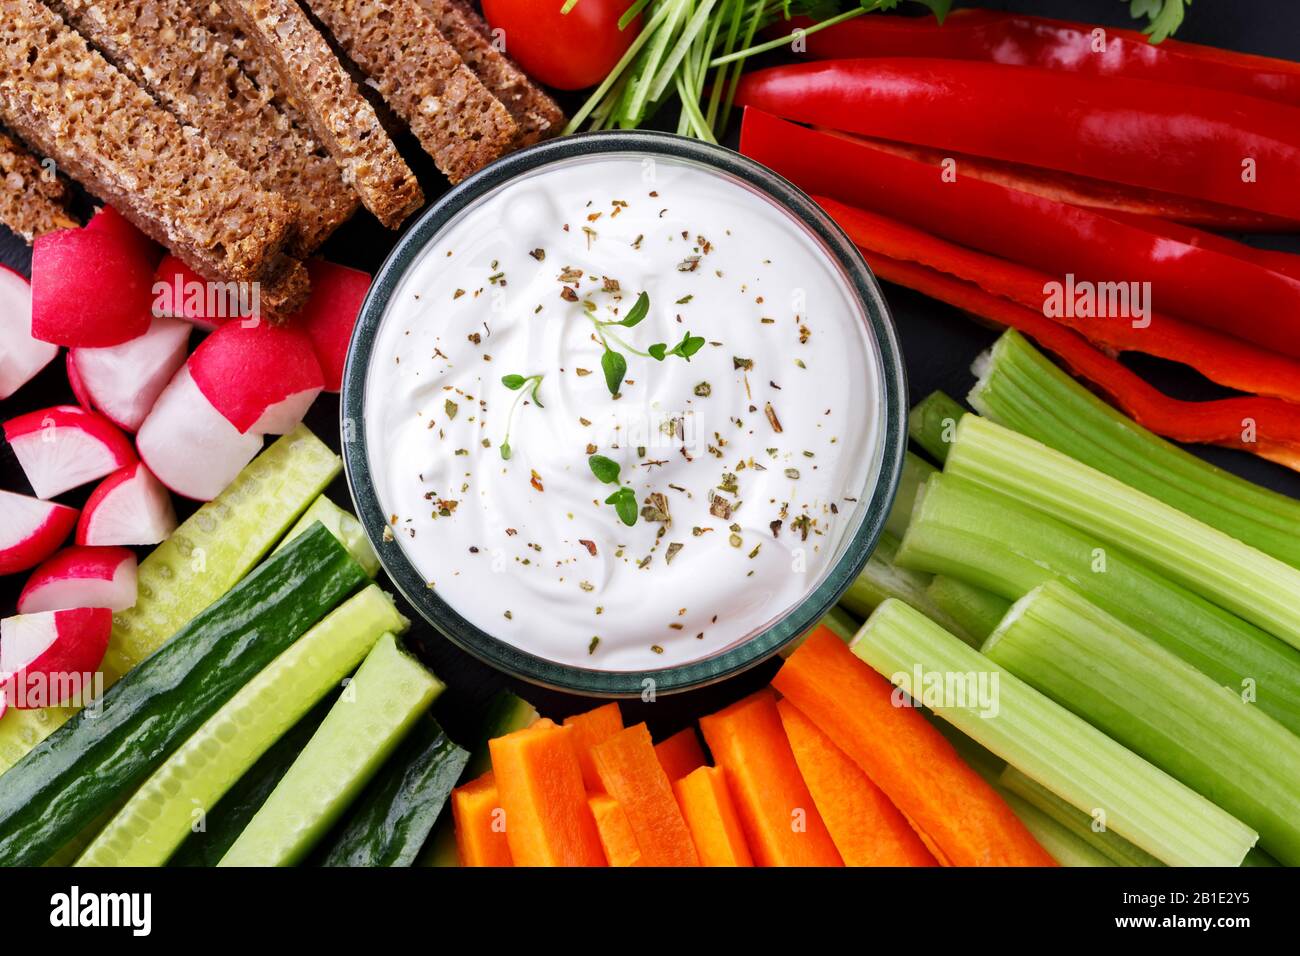 En-cas de légumes sains avec sauce au yaourt sur une planche ronde en pierre d'ardoise, vue de dessus rapprochée Banque D'Images